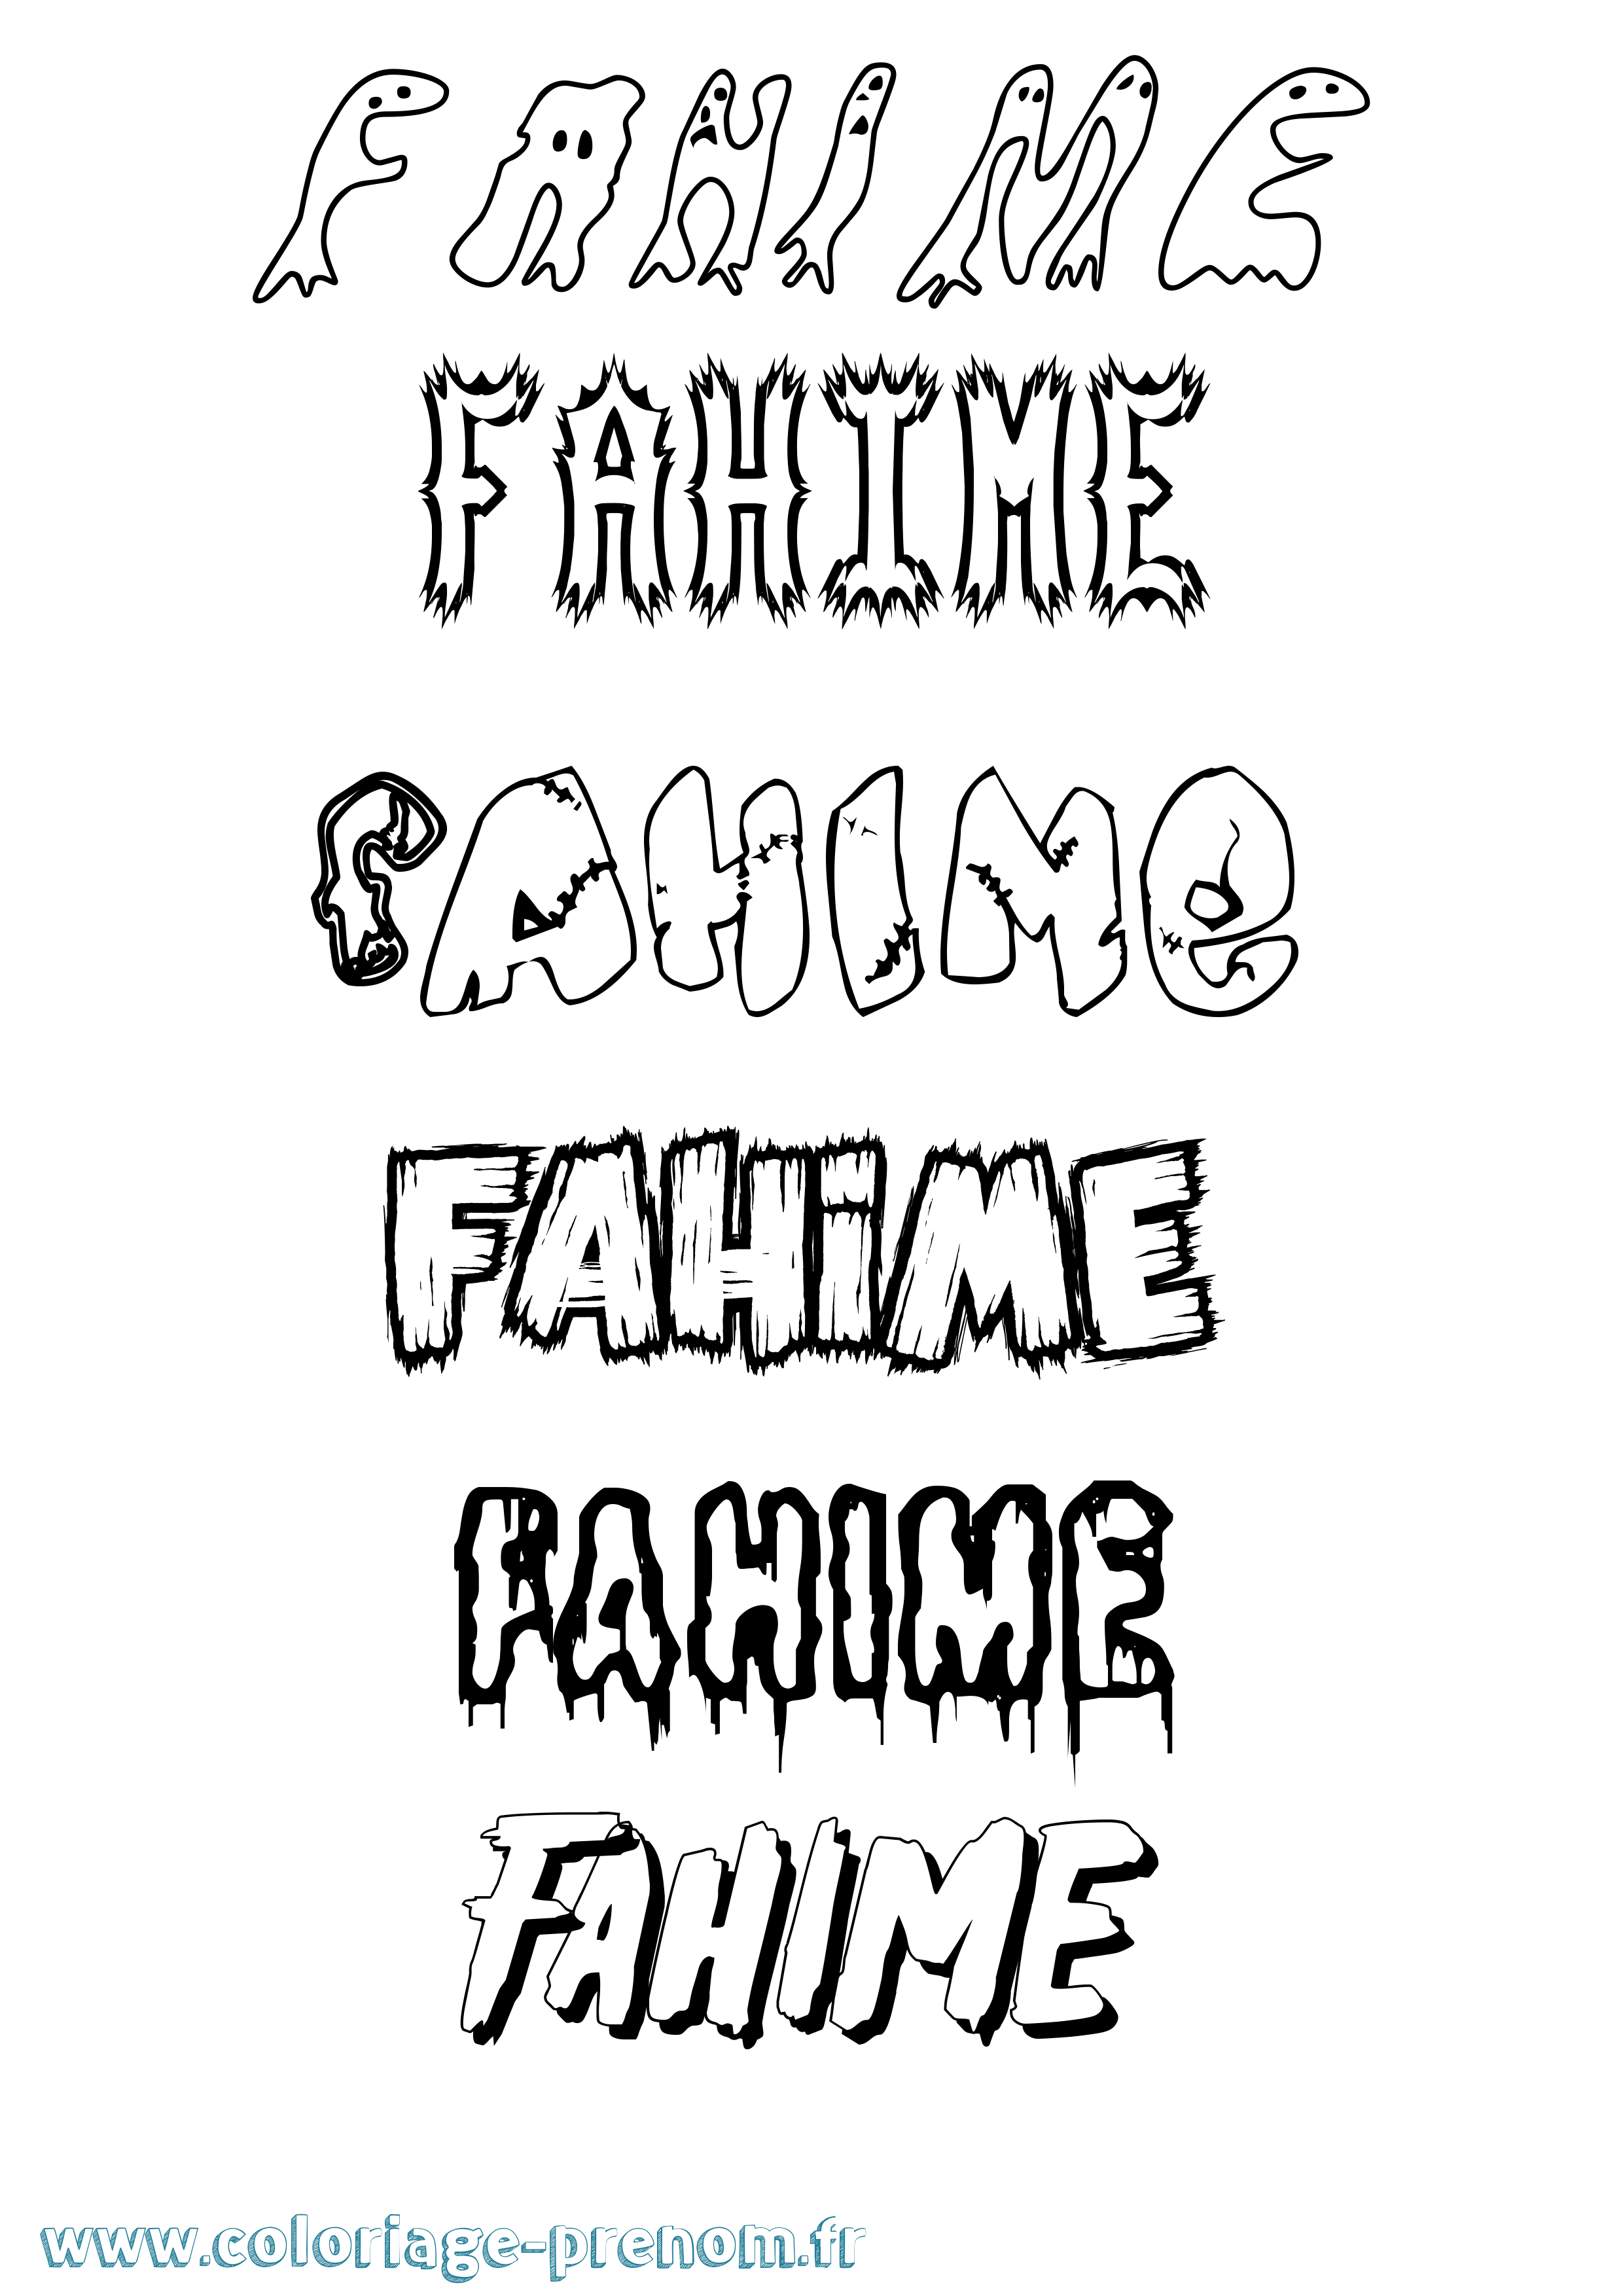 Coloriage prénom Fahime Frisson